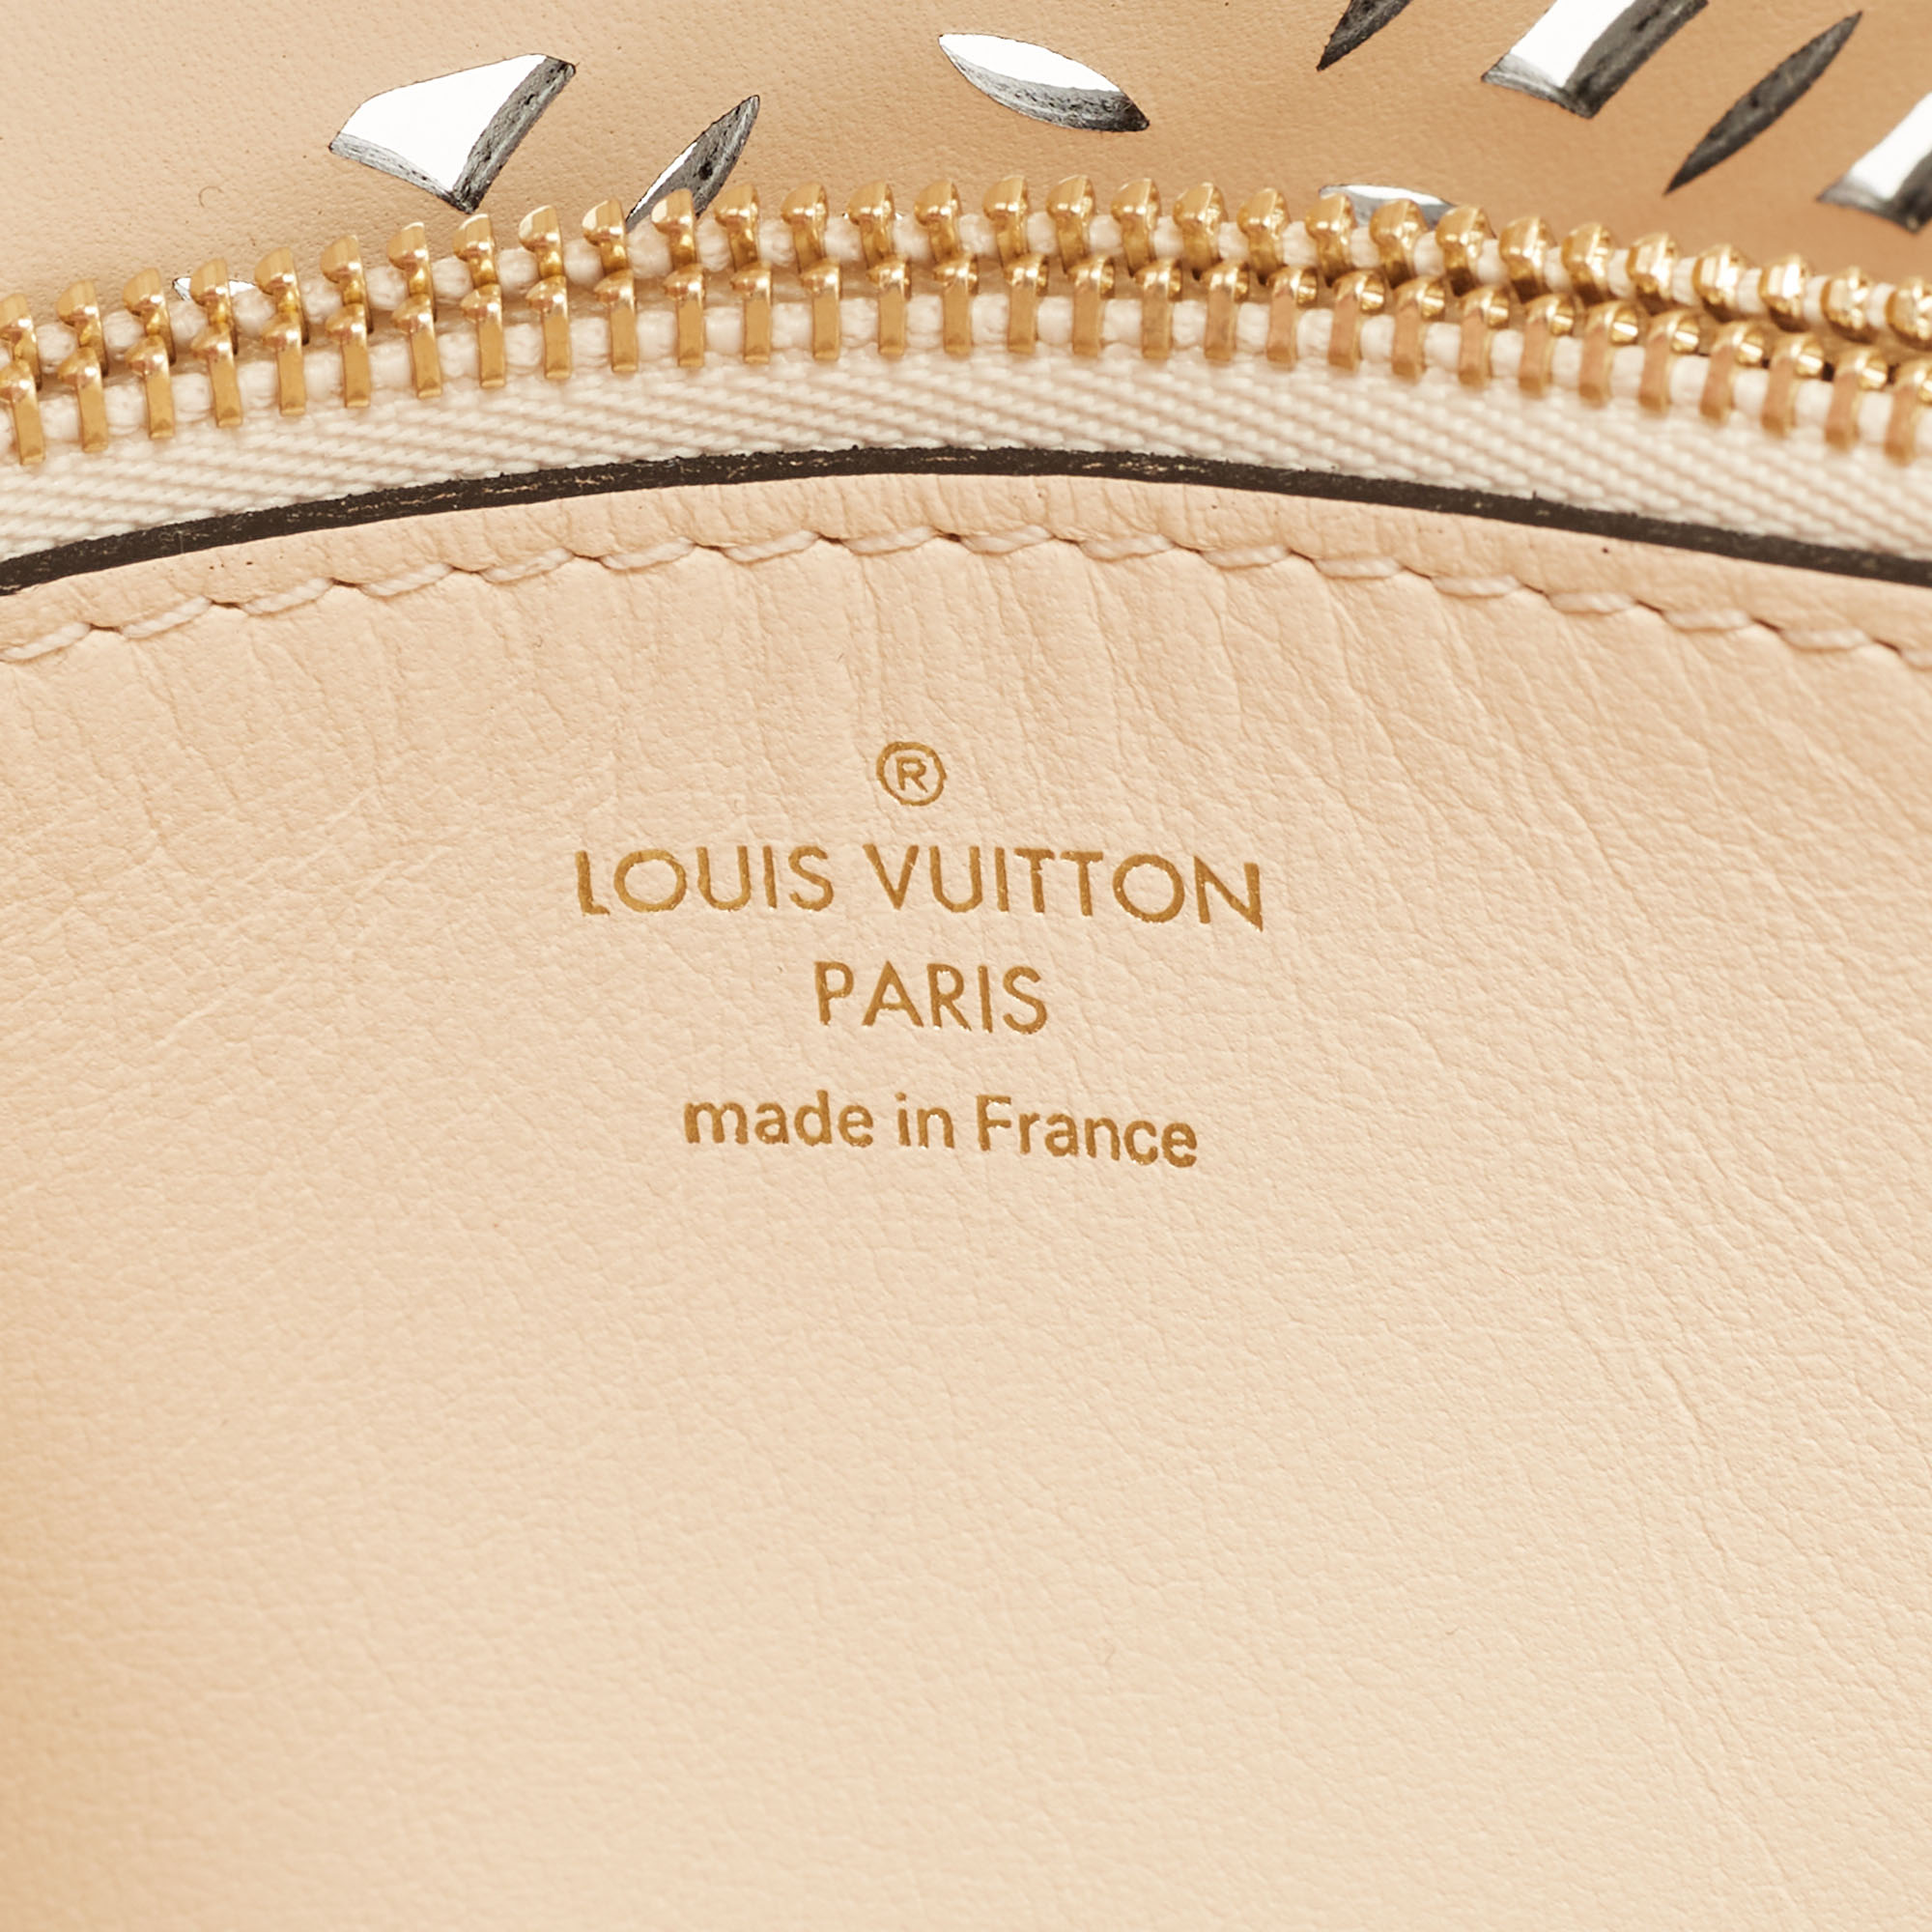 Capucines handbag Louis Vuitton Beige in Wicker - 35348633